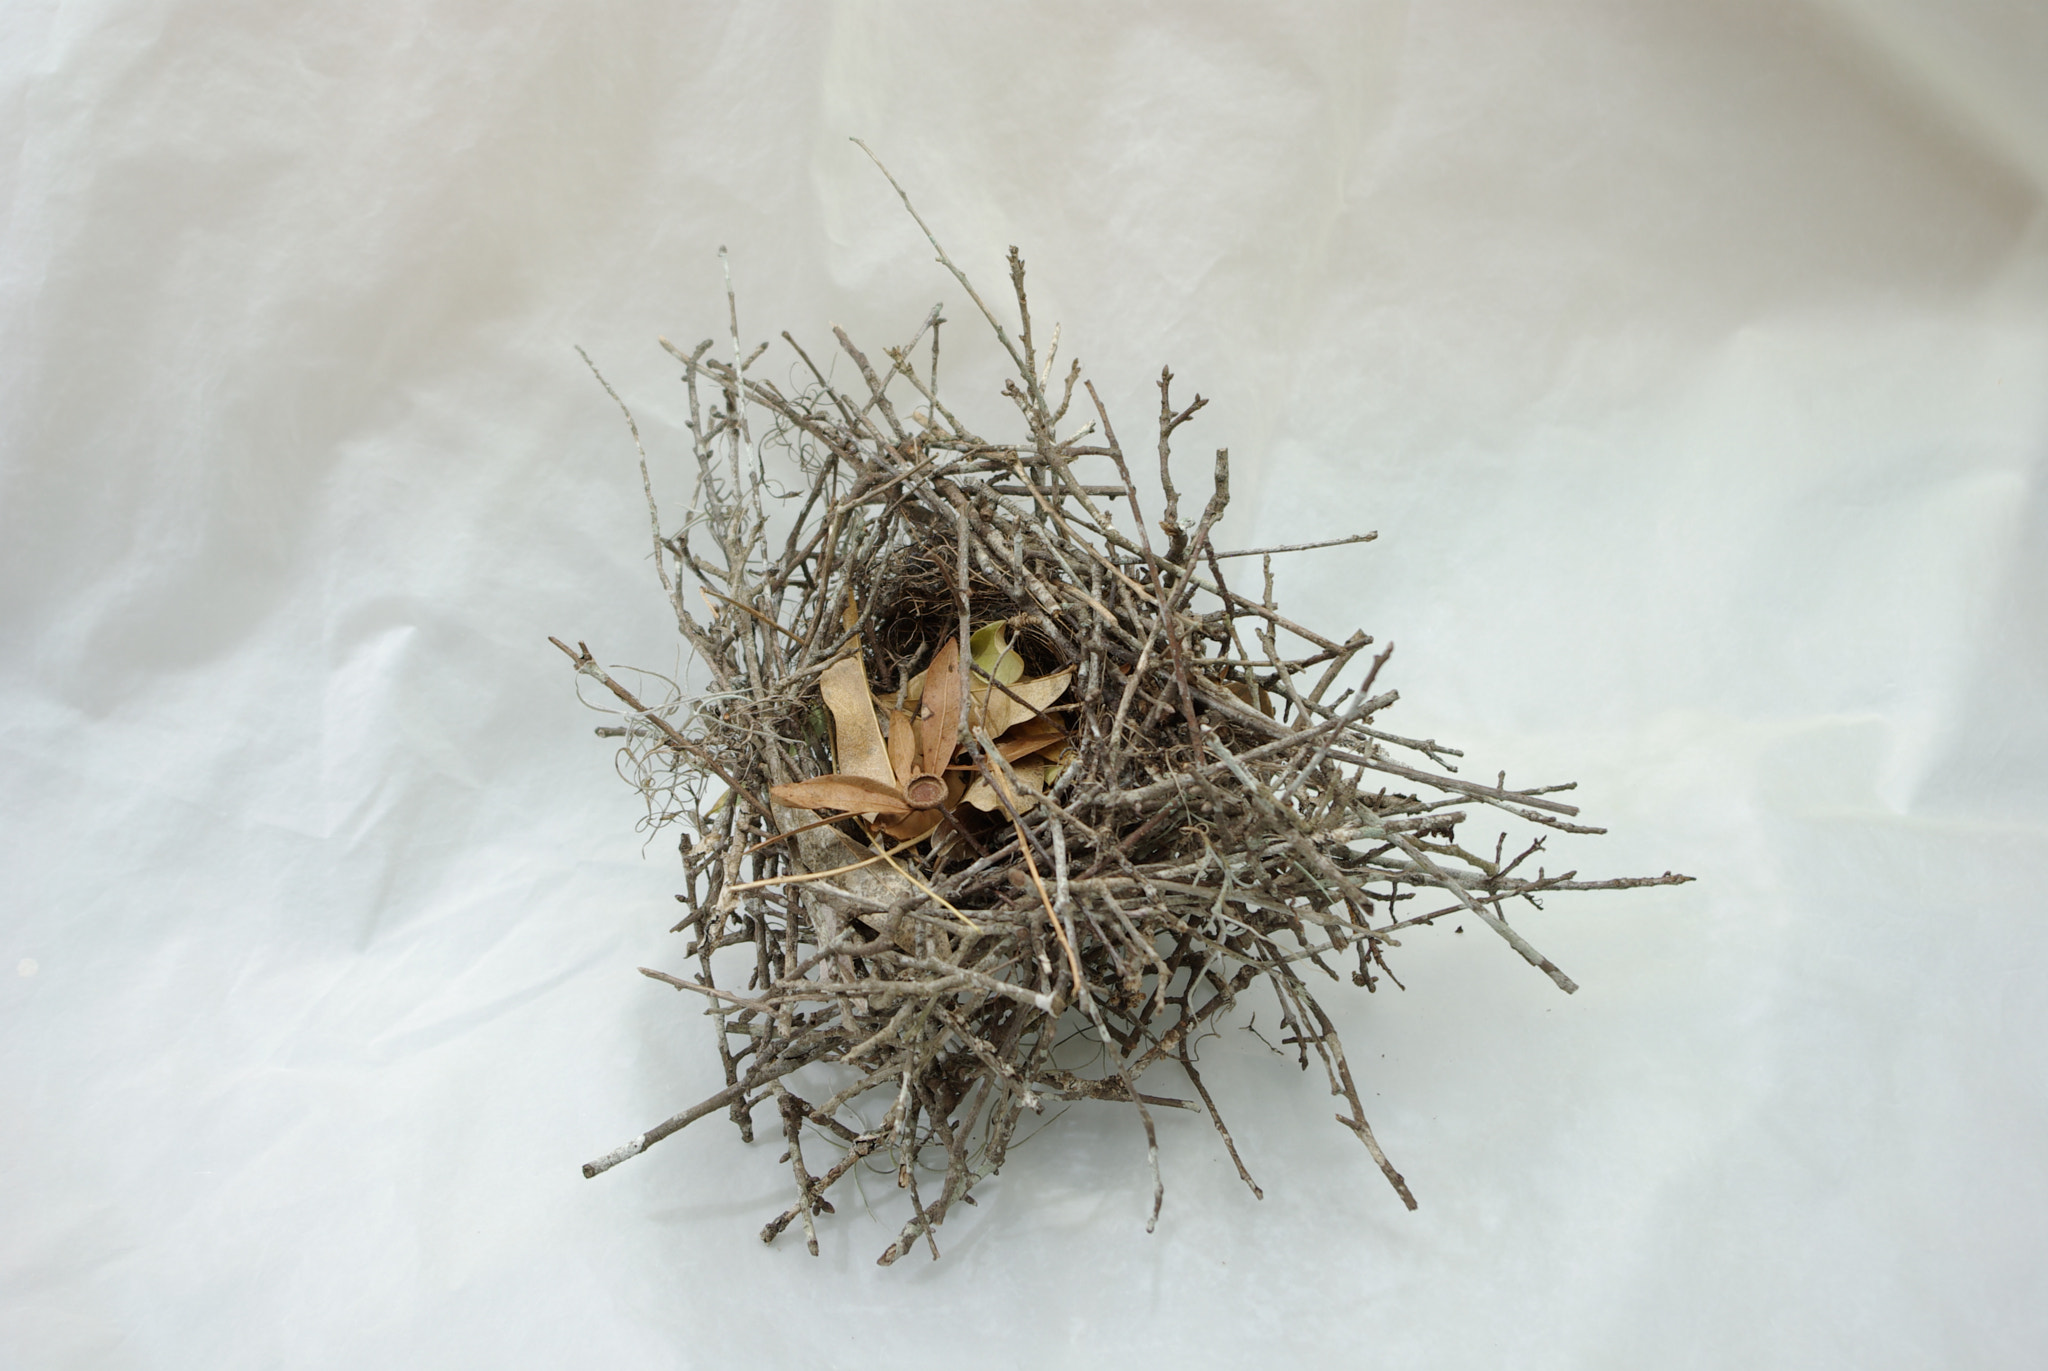 Pentax K10D sample photo. Bird nest photography